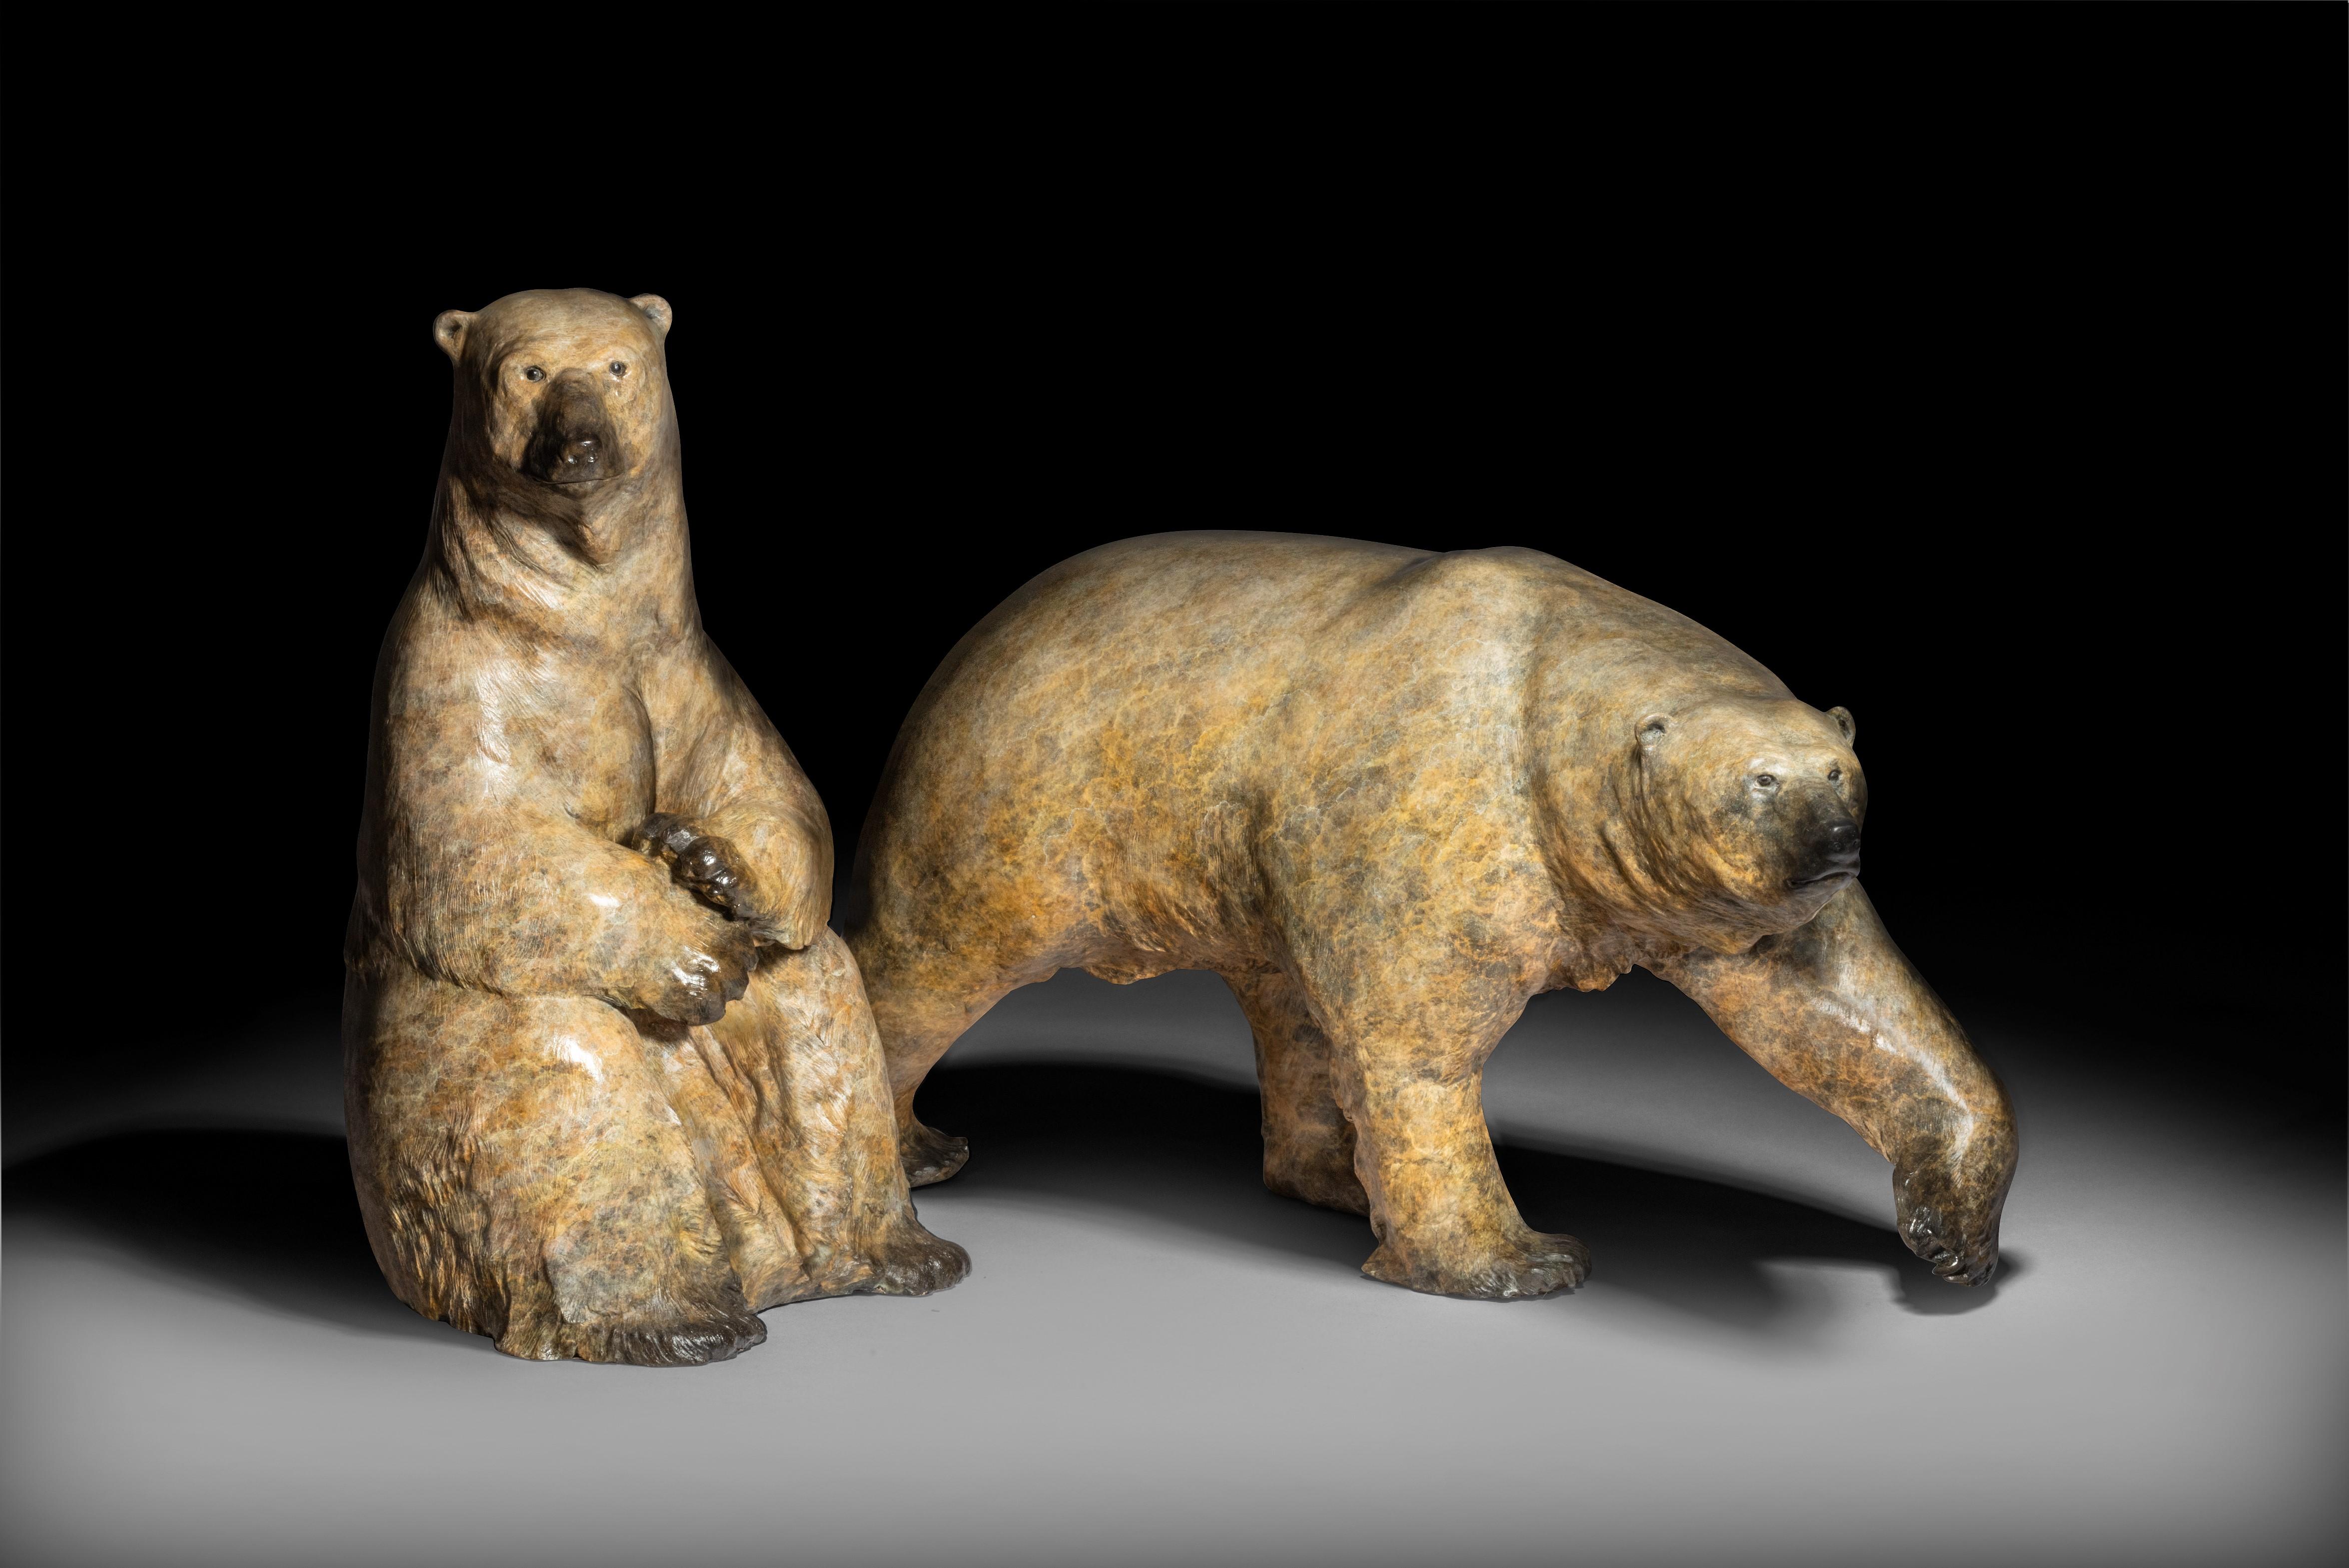 maximus, l'ours polaire, est une remarquable sculpture en bronze réalisée par Tobias Martin.

Tobias Martin est né en 1972 dans le Wiltshire, à 12 miles de Stonehenge. Influencées par son éducation rurale idyllique et les forces de la nature et de